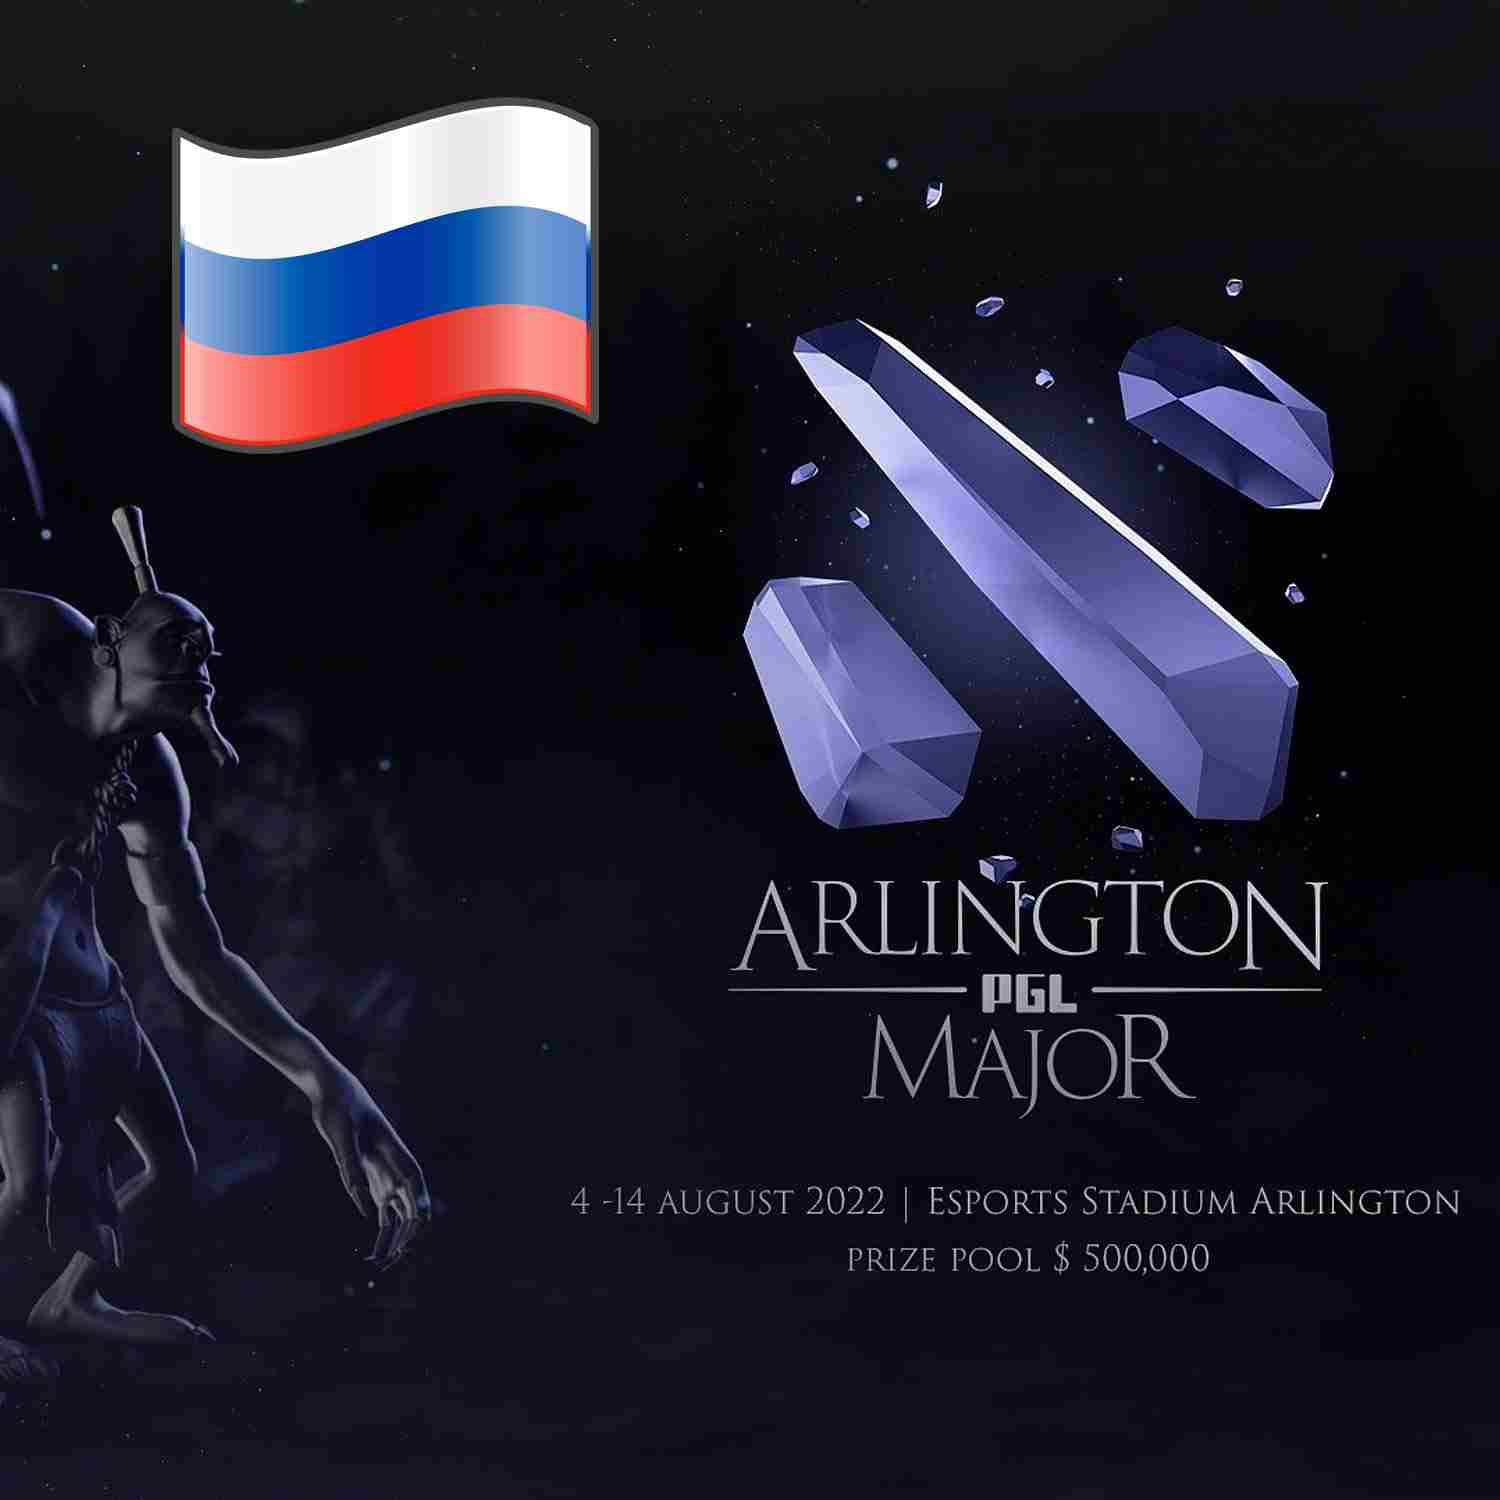 Jugadores rusos podrían tener problemas para viajar a la Arlington Major